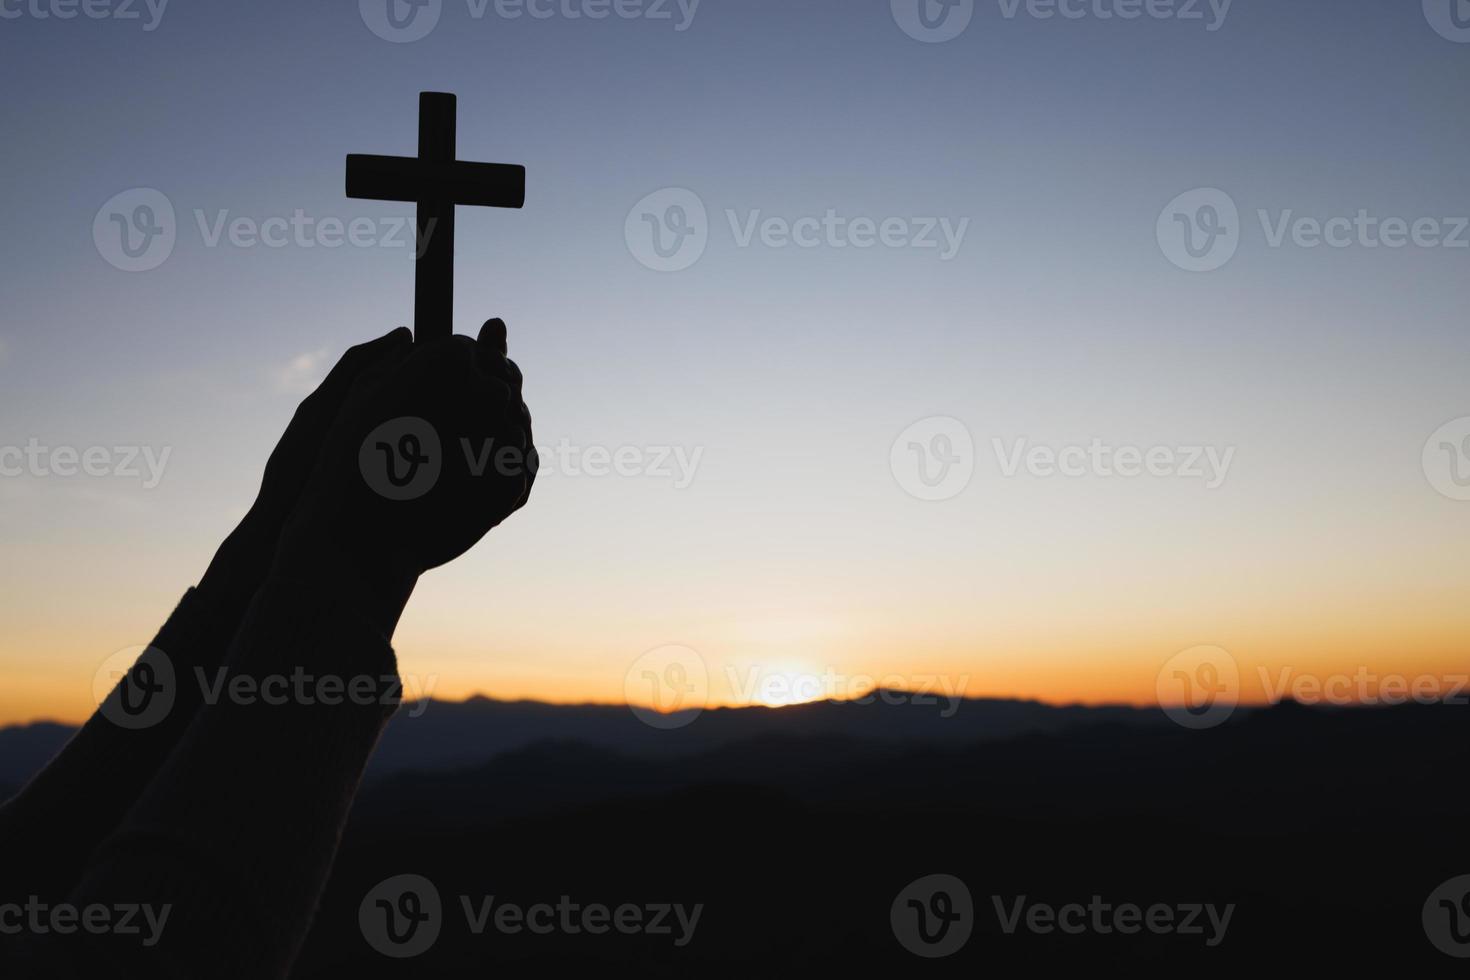 silueta de manos sosteniendo una cruz de madera en el fondo del amanecer, crucifijo, símbolo de fe. foto